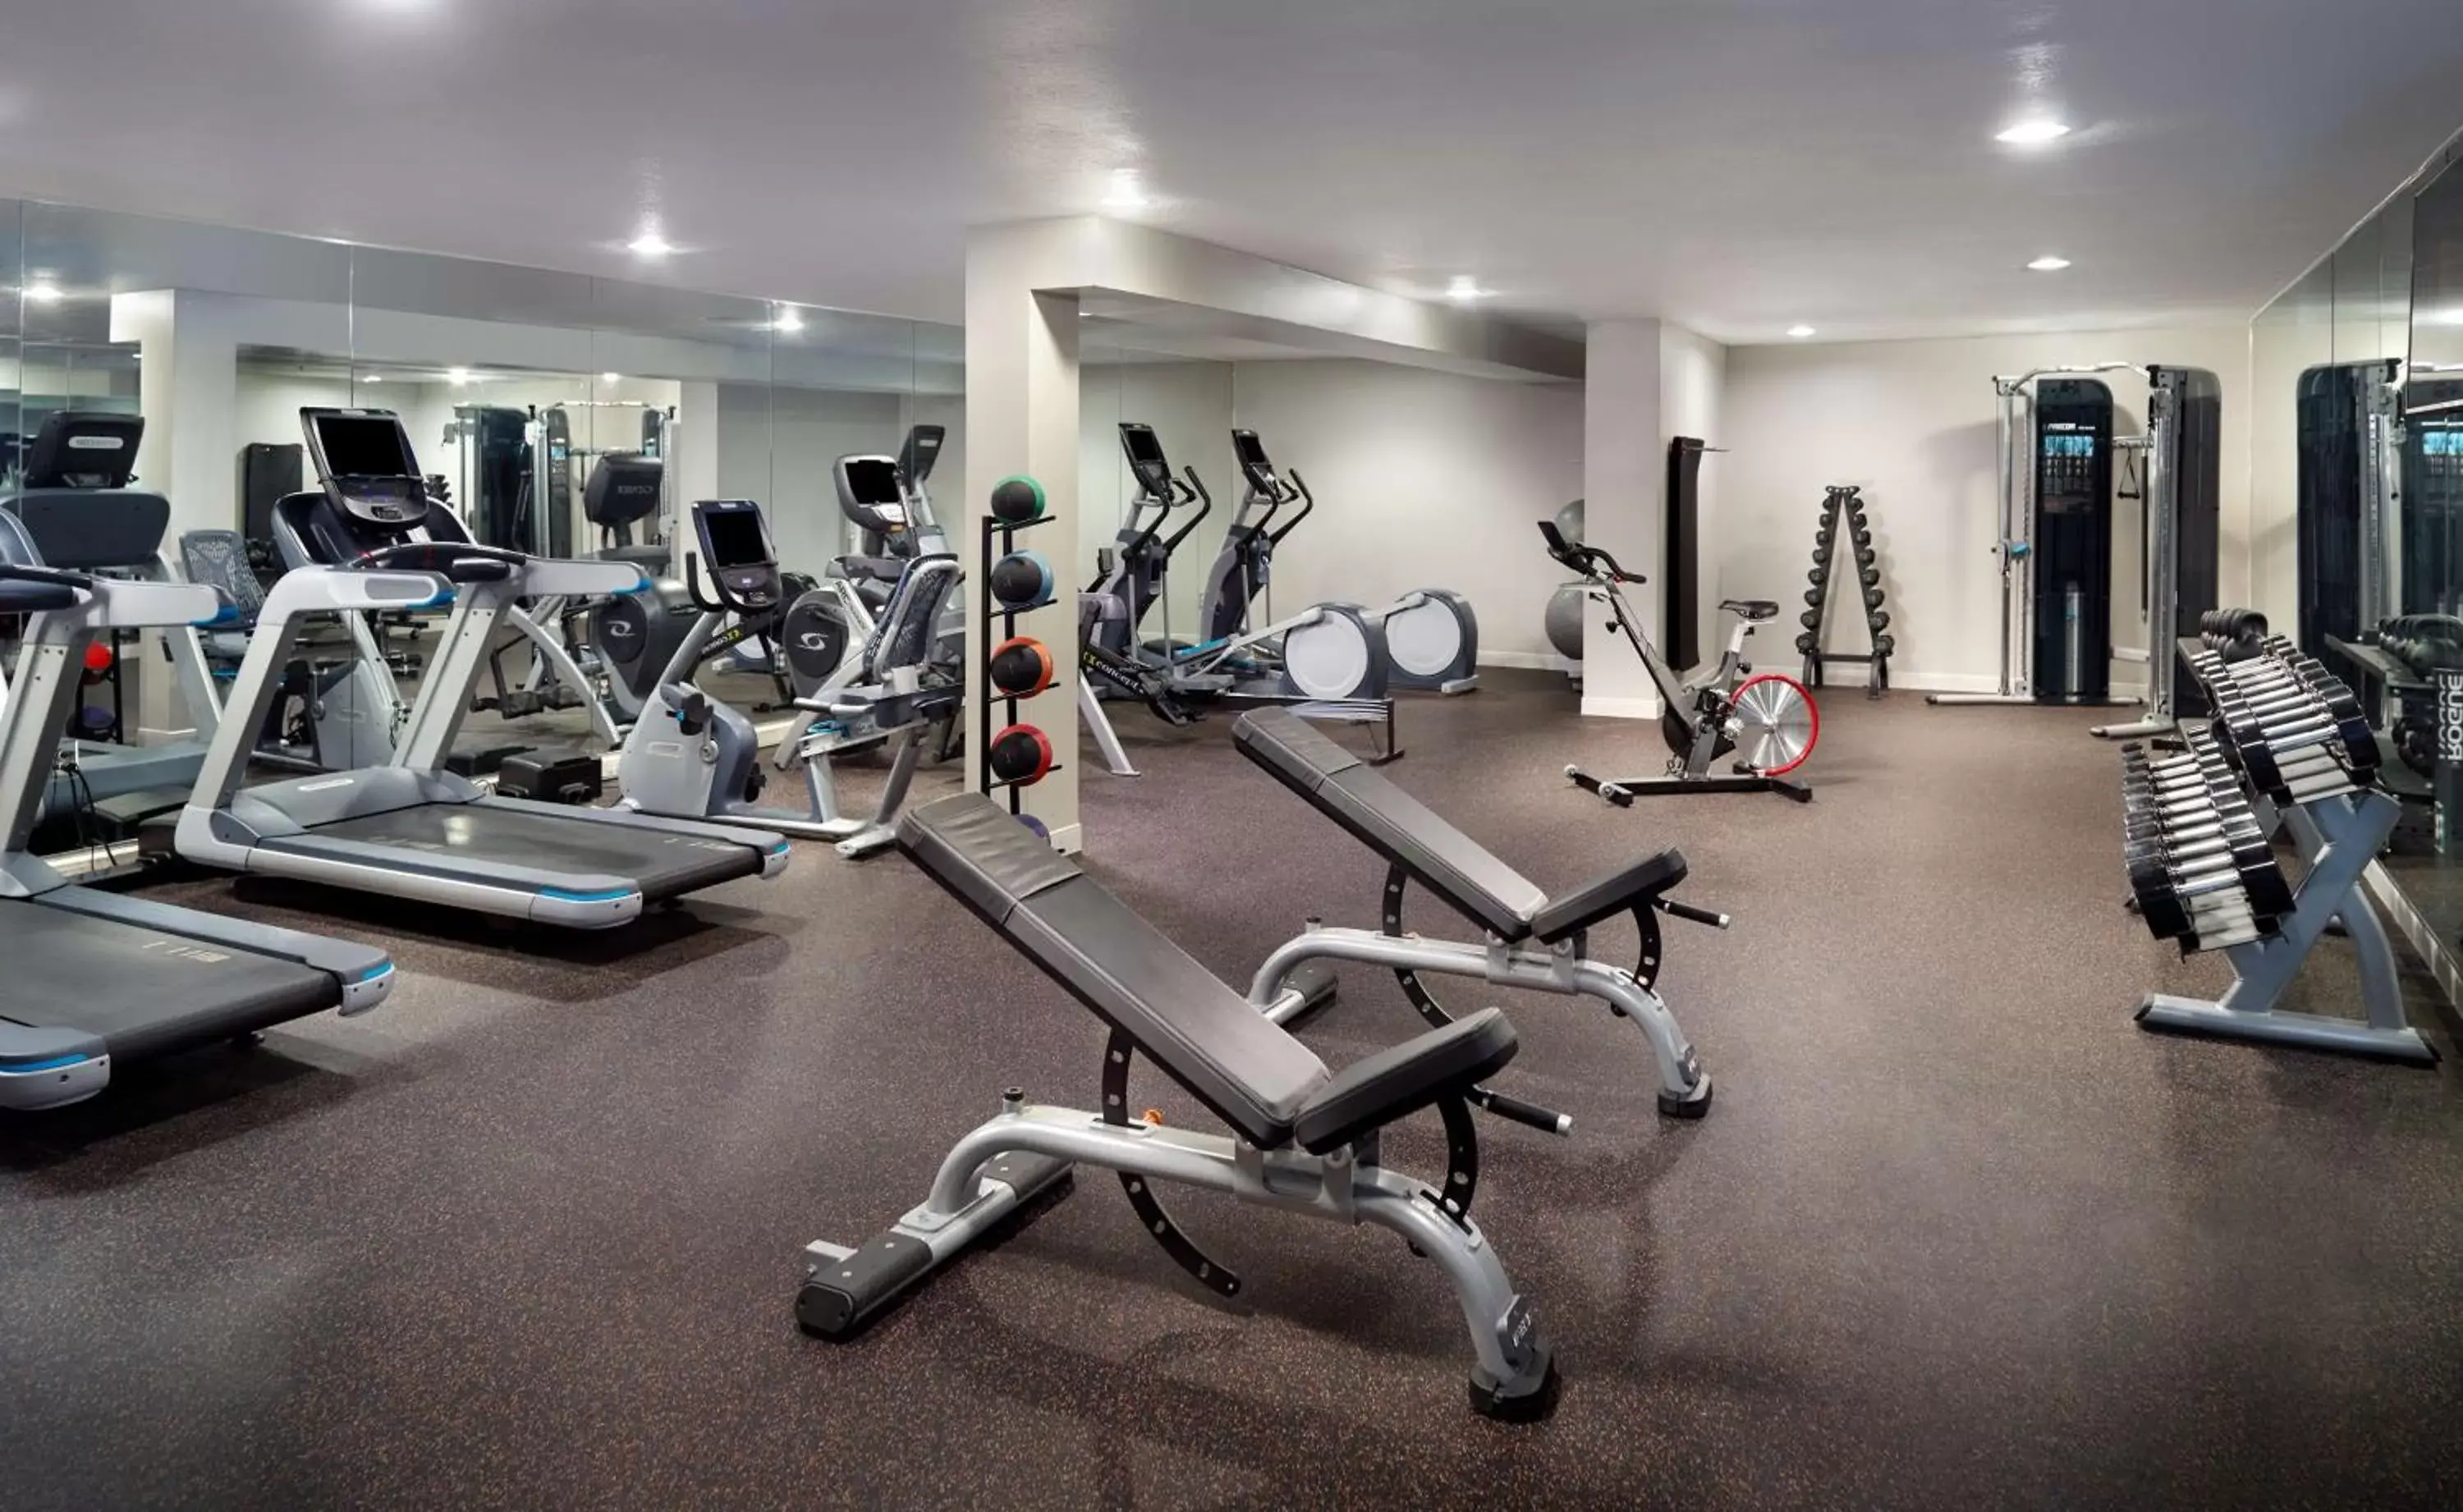 Fitness centre/facilities, Fitness Center/Facilities in Hyatt Regency Houston West